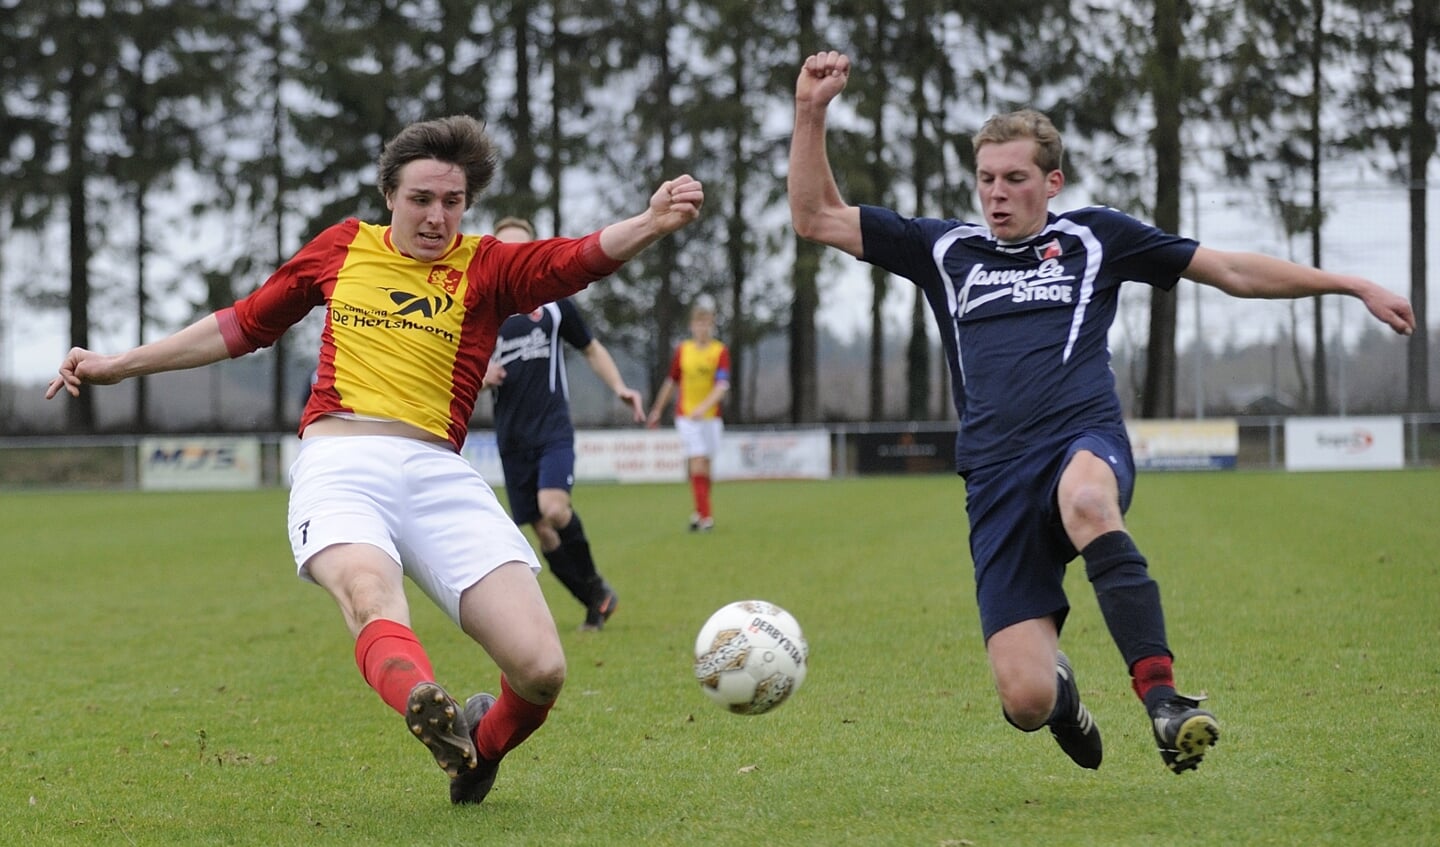 Derby en topper: Veluwse Boys - Stroe